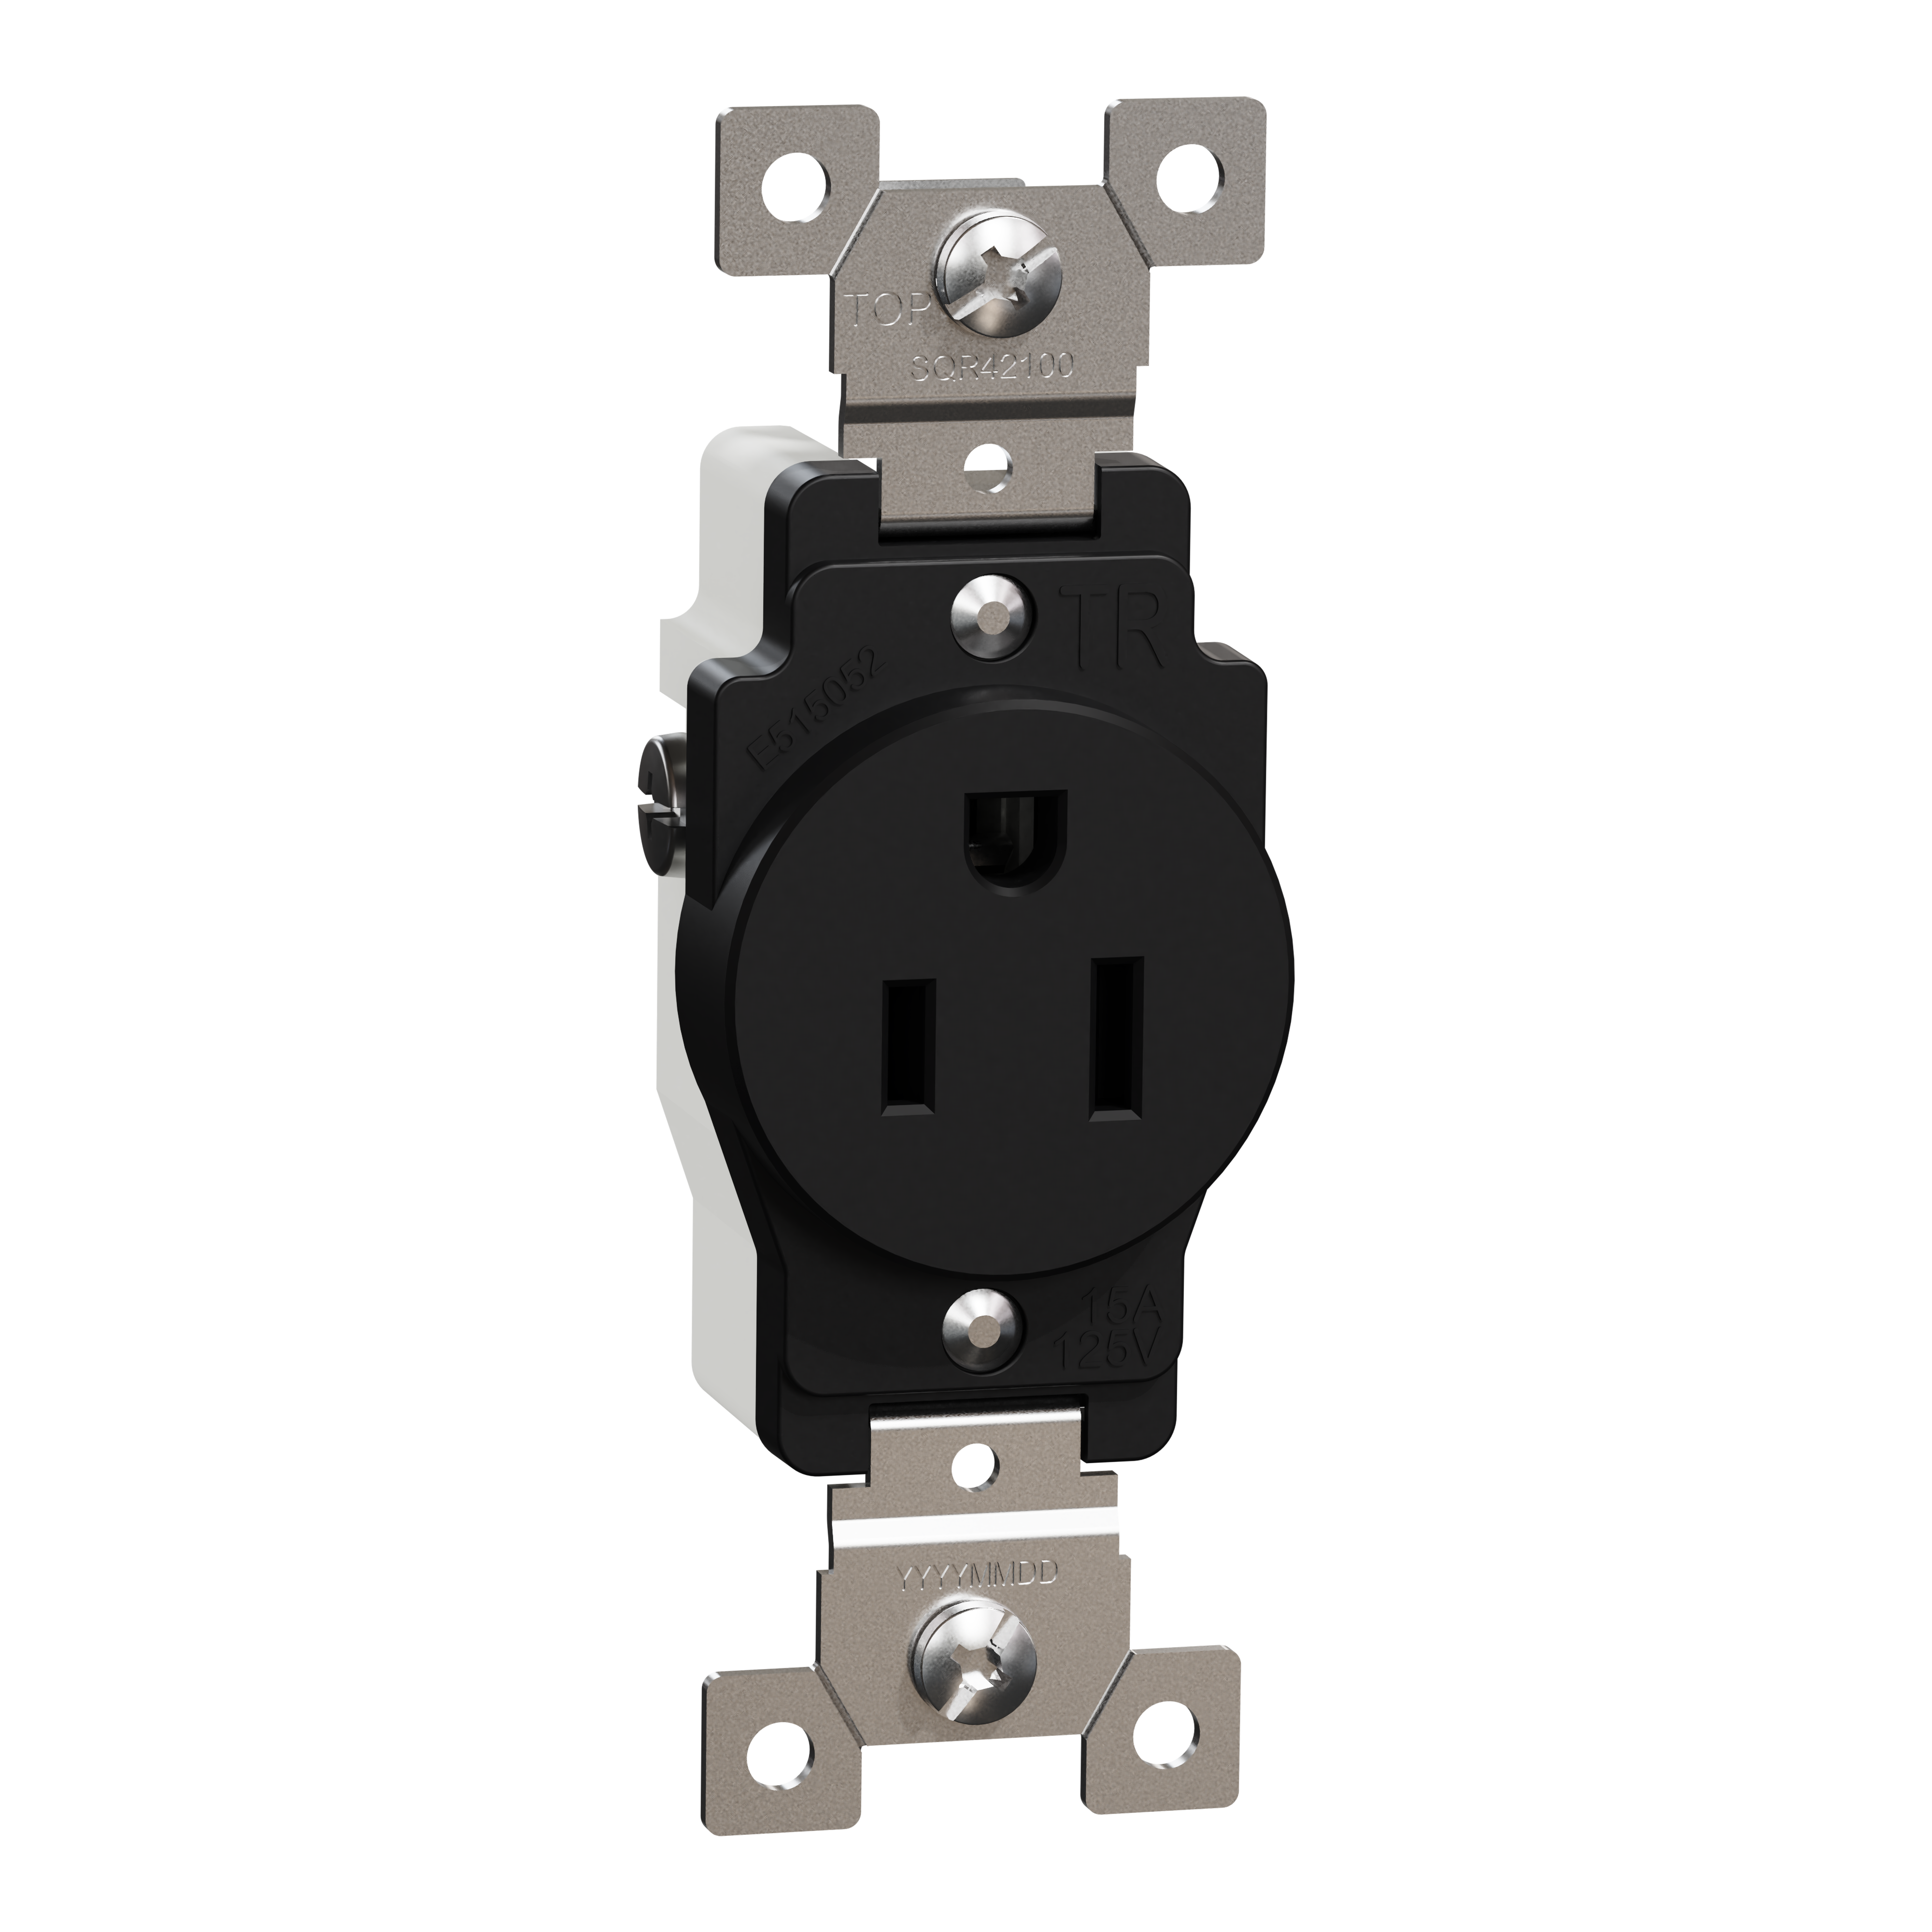 Socket-outlet, X Series, 15A, standard, single, tamper resistant, commercial, black, matte finish